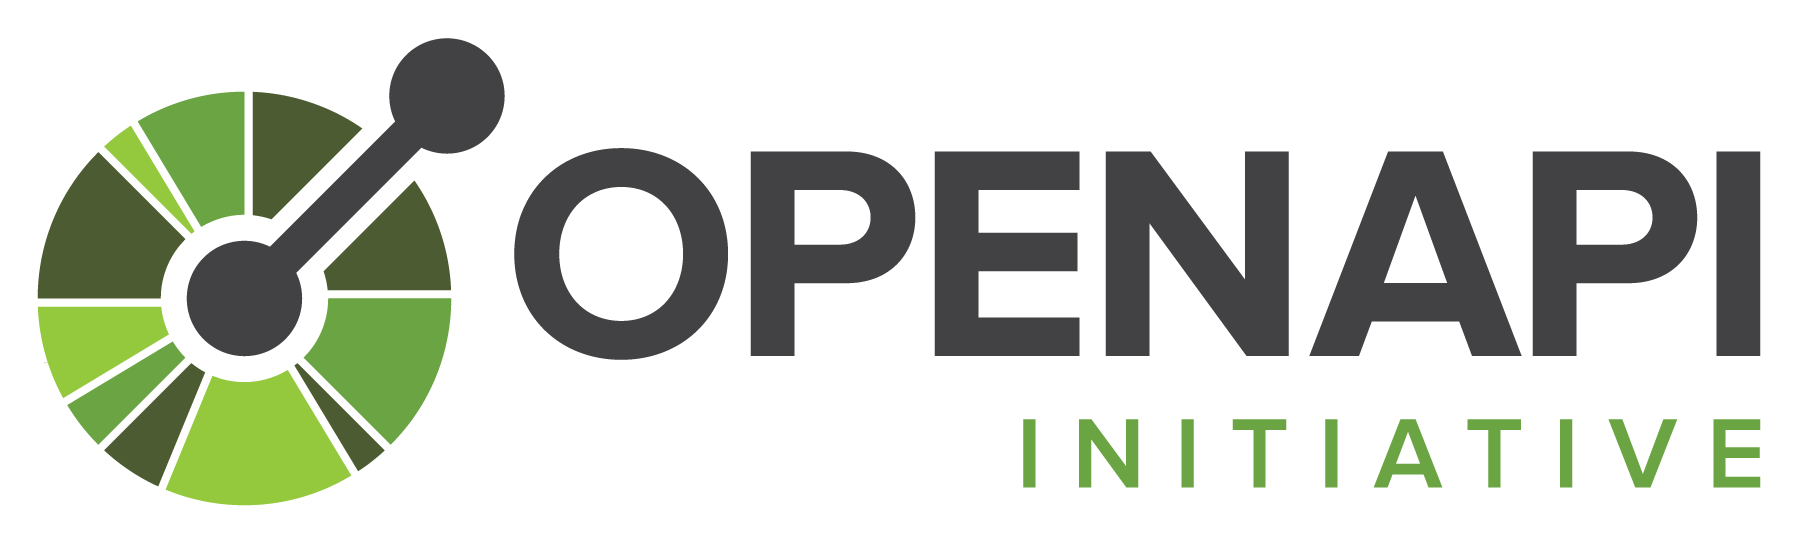 Google API Logo - Home - OpenAPI Initiative